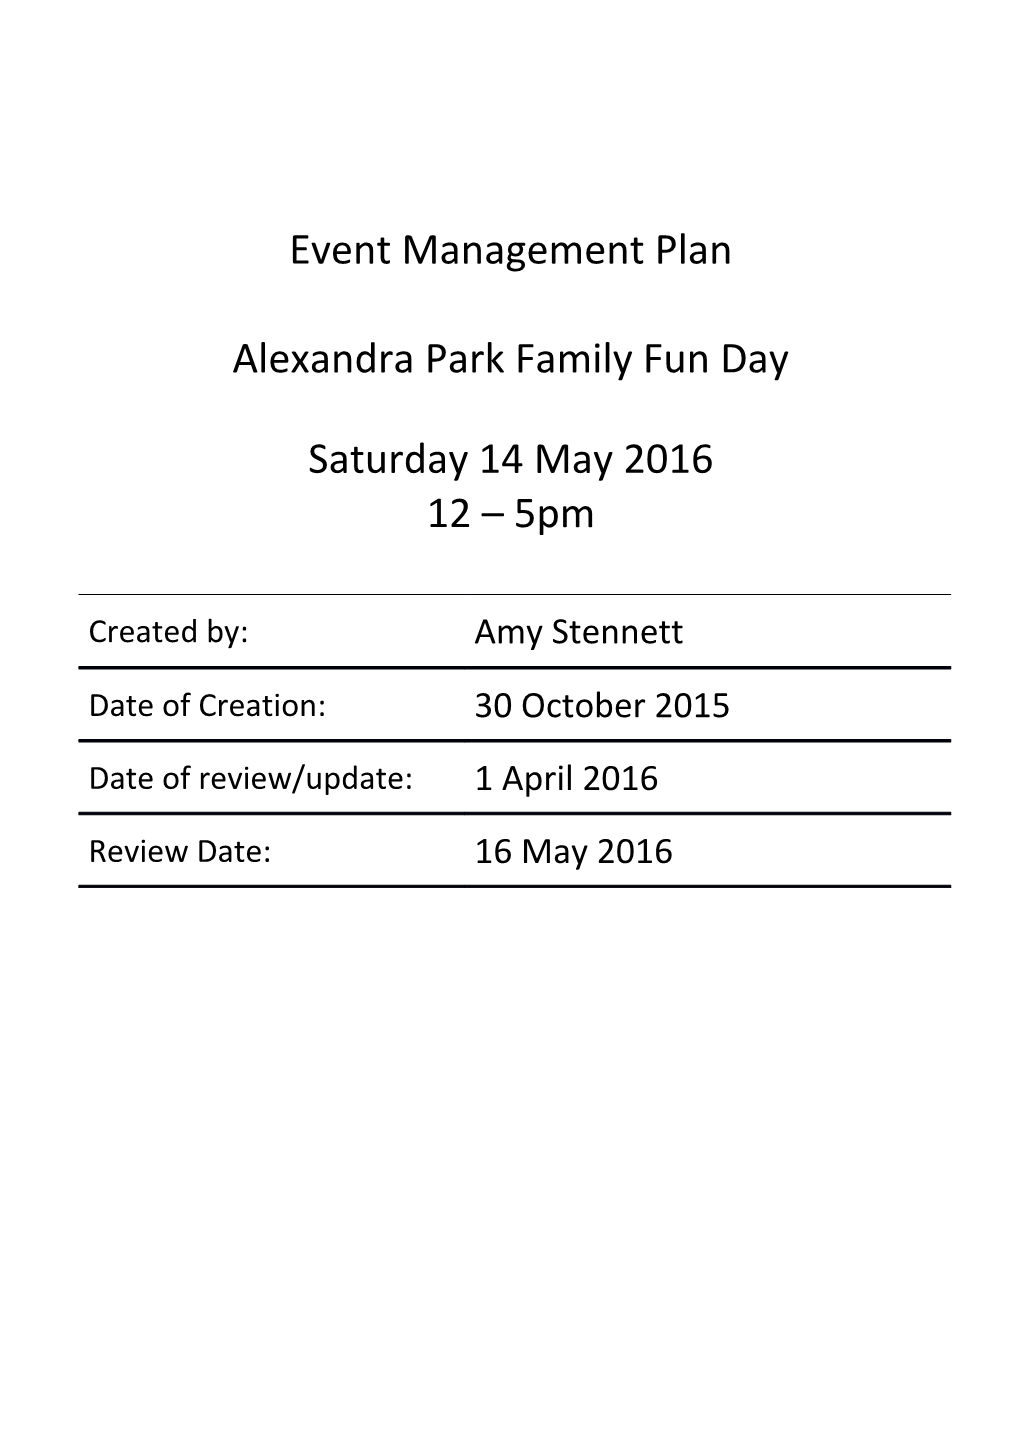 Event Management Plan s1